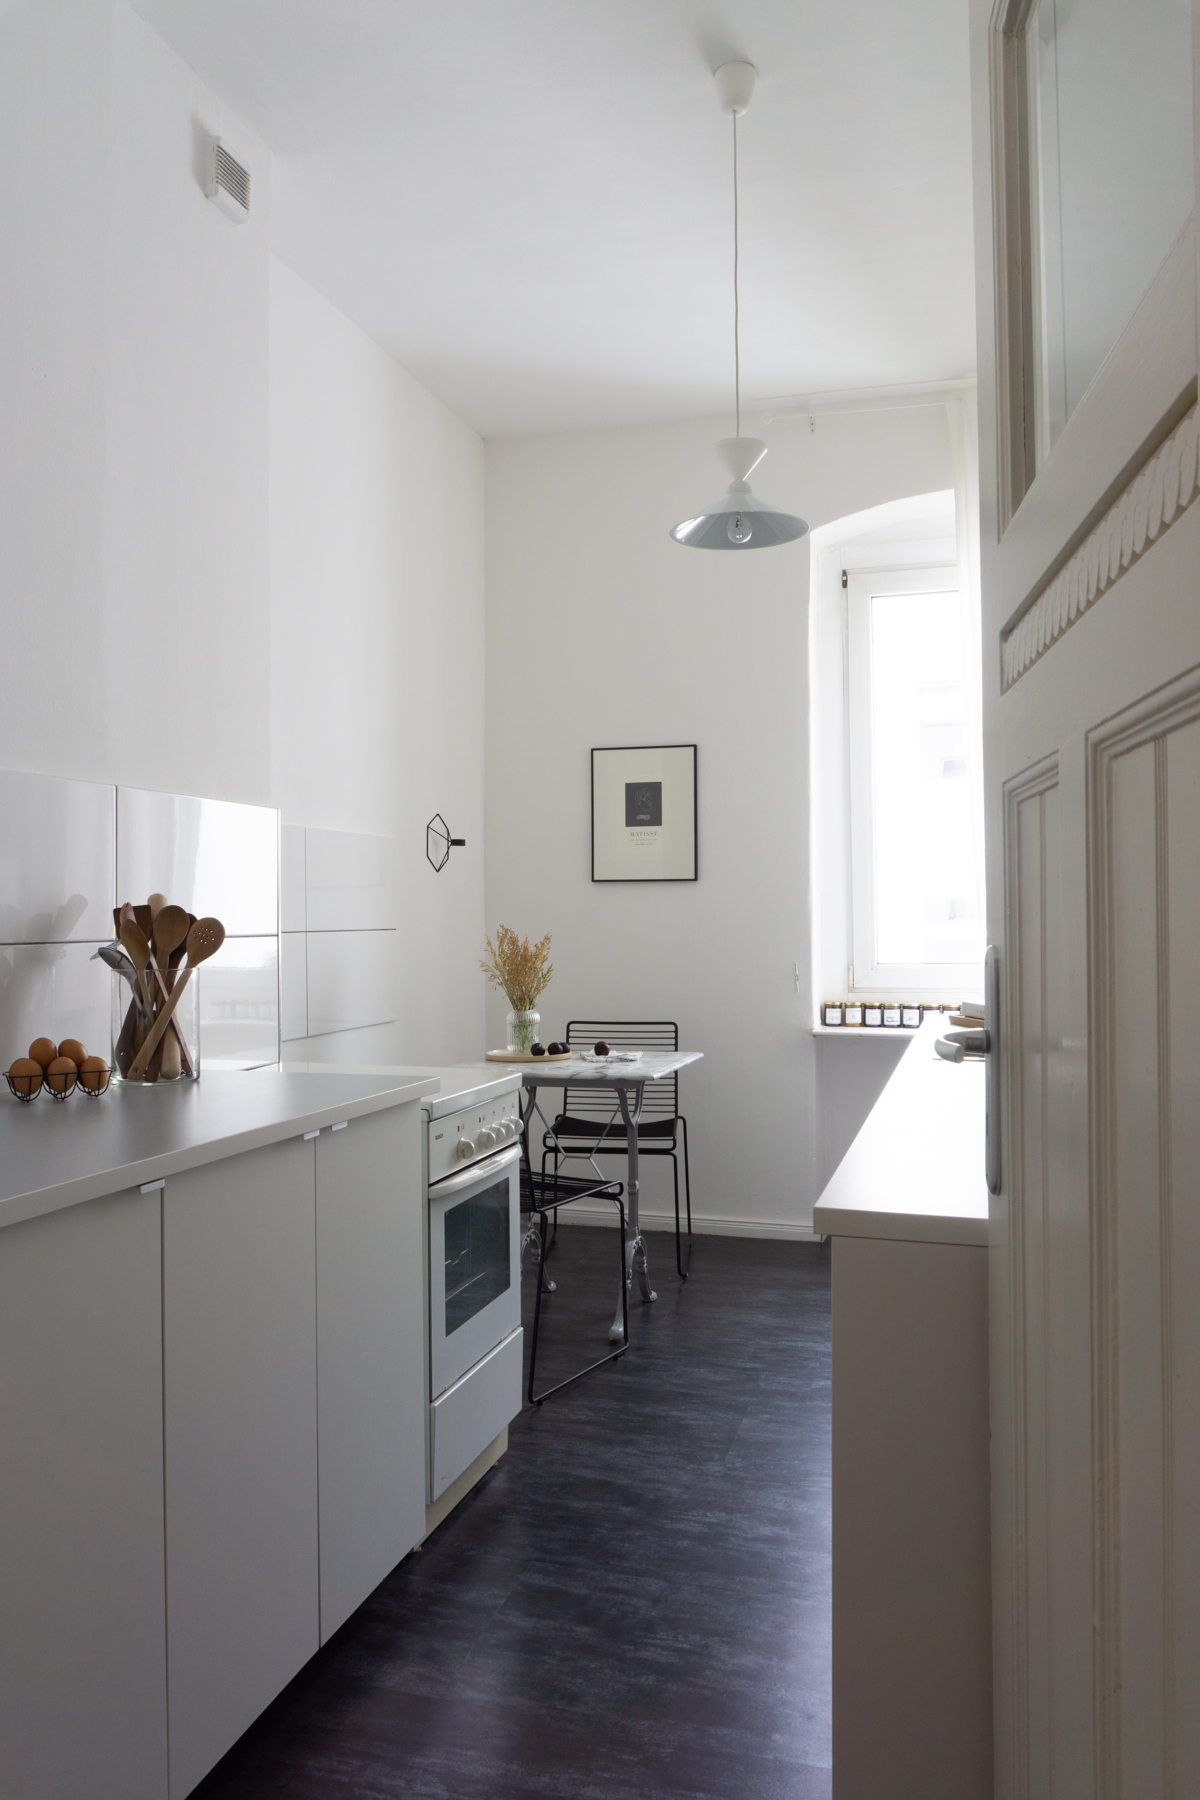 White and Beige Danish Inspired Kitchen | Matisse Artwork, Marble Kitchen Table, Hay Hee Chair, Menu POV, Wheat Arrangement - RG Daily Blog, Interior Design